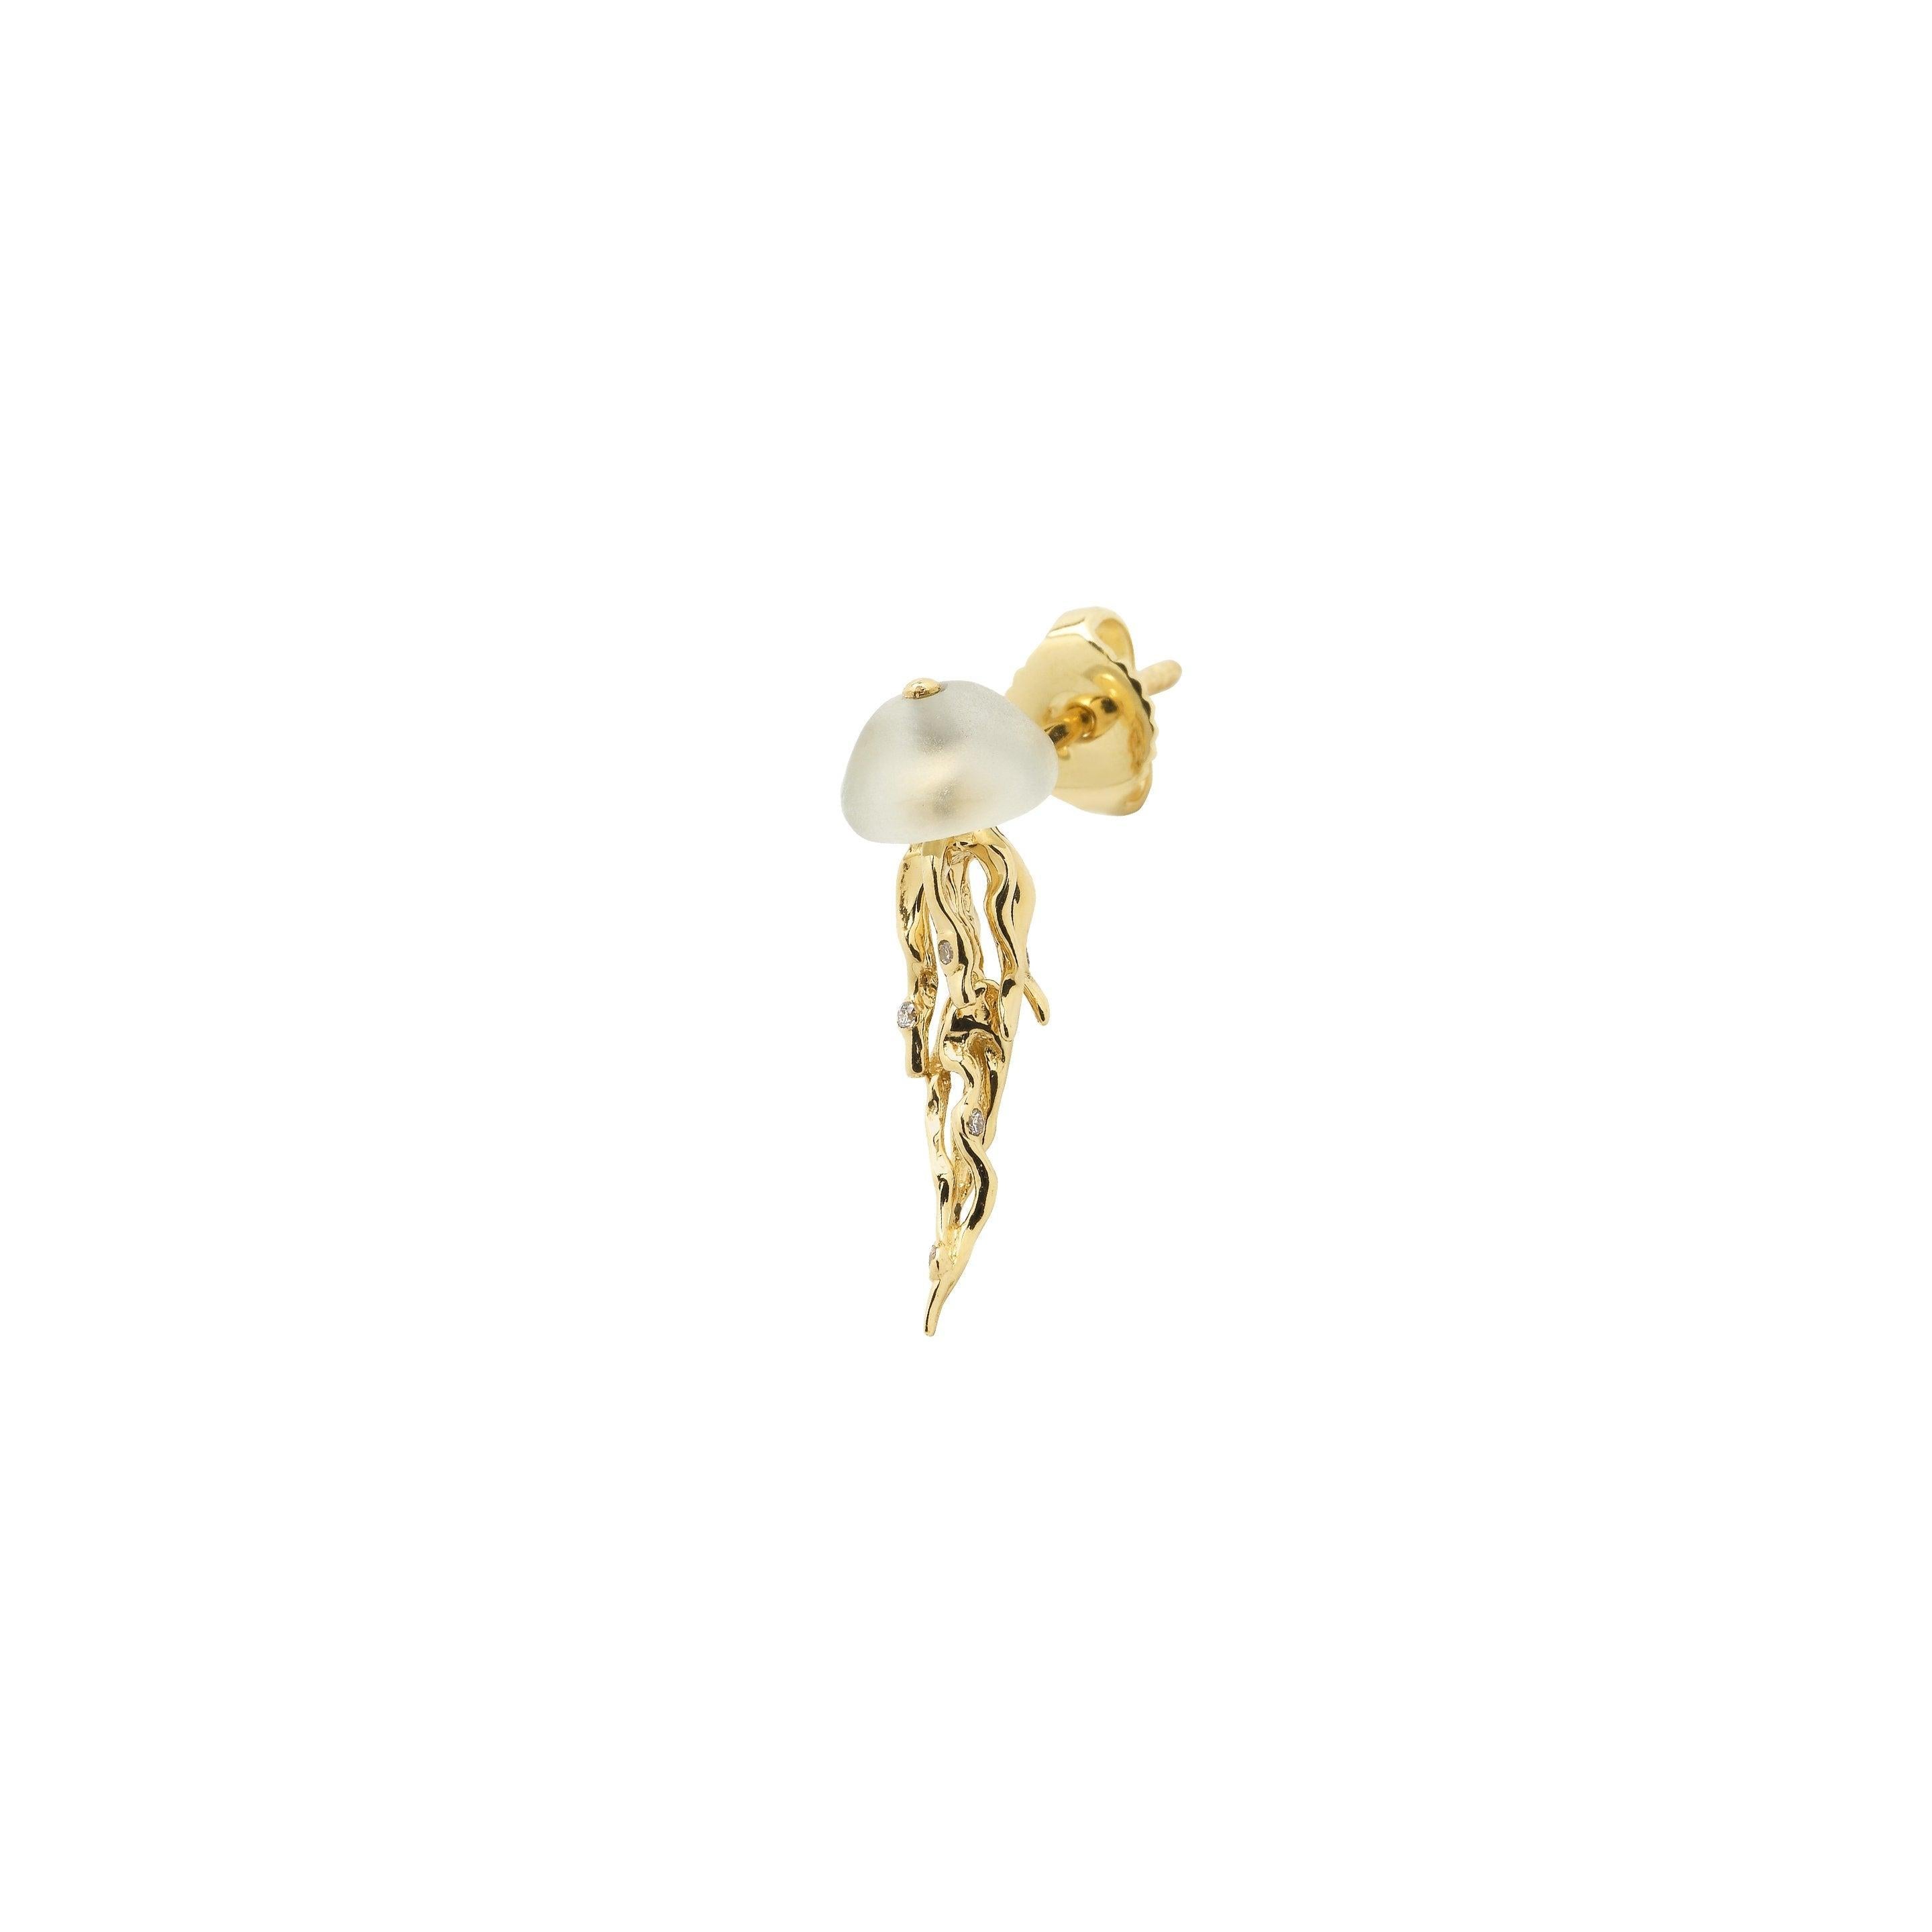 jellyfish stud earrings